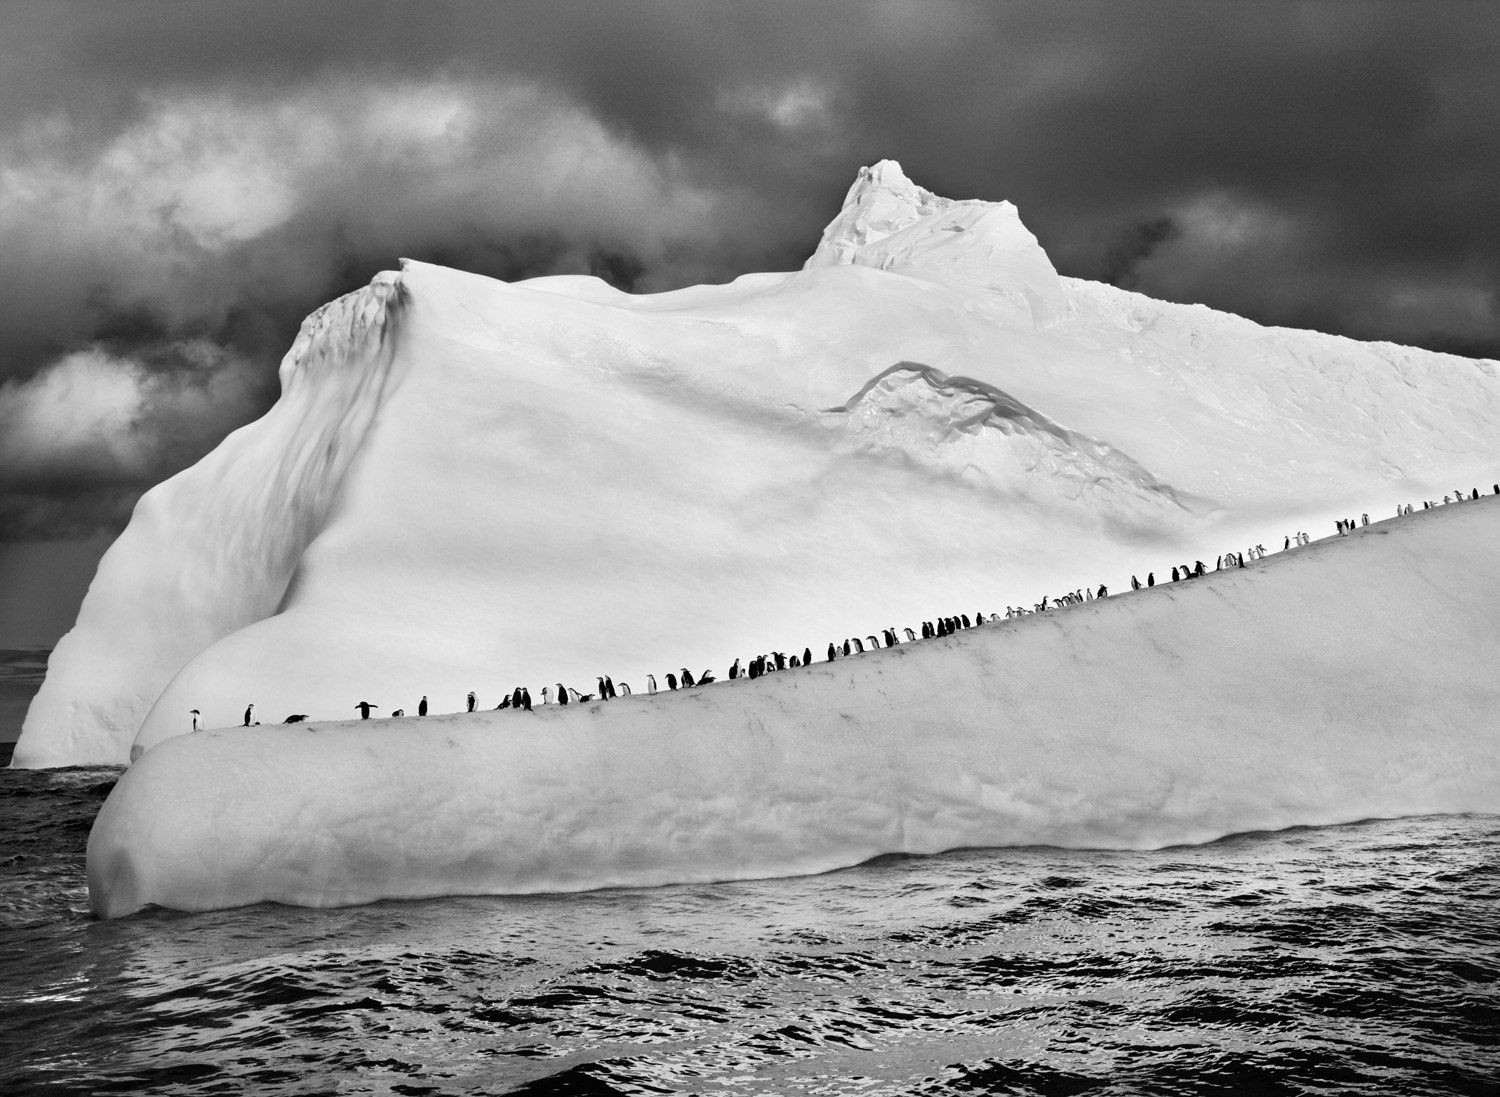 Антарктические пингвины на айсберге, Южные Сандвичевы острова, 2009. Автор Себастьян Сальгадо